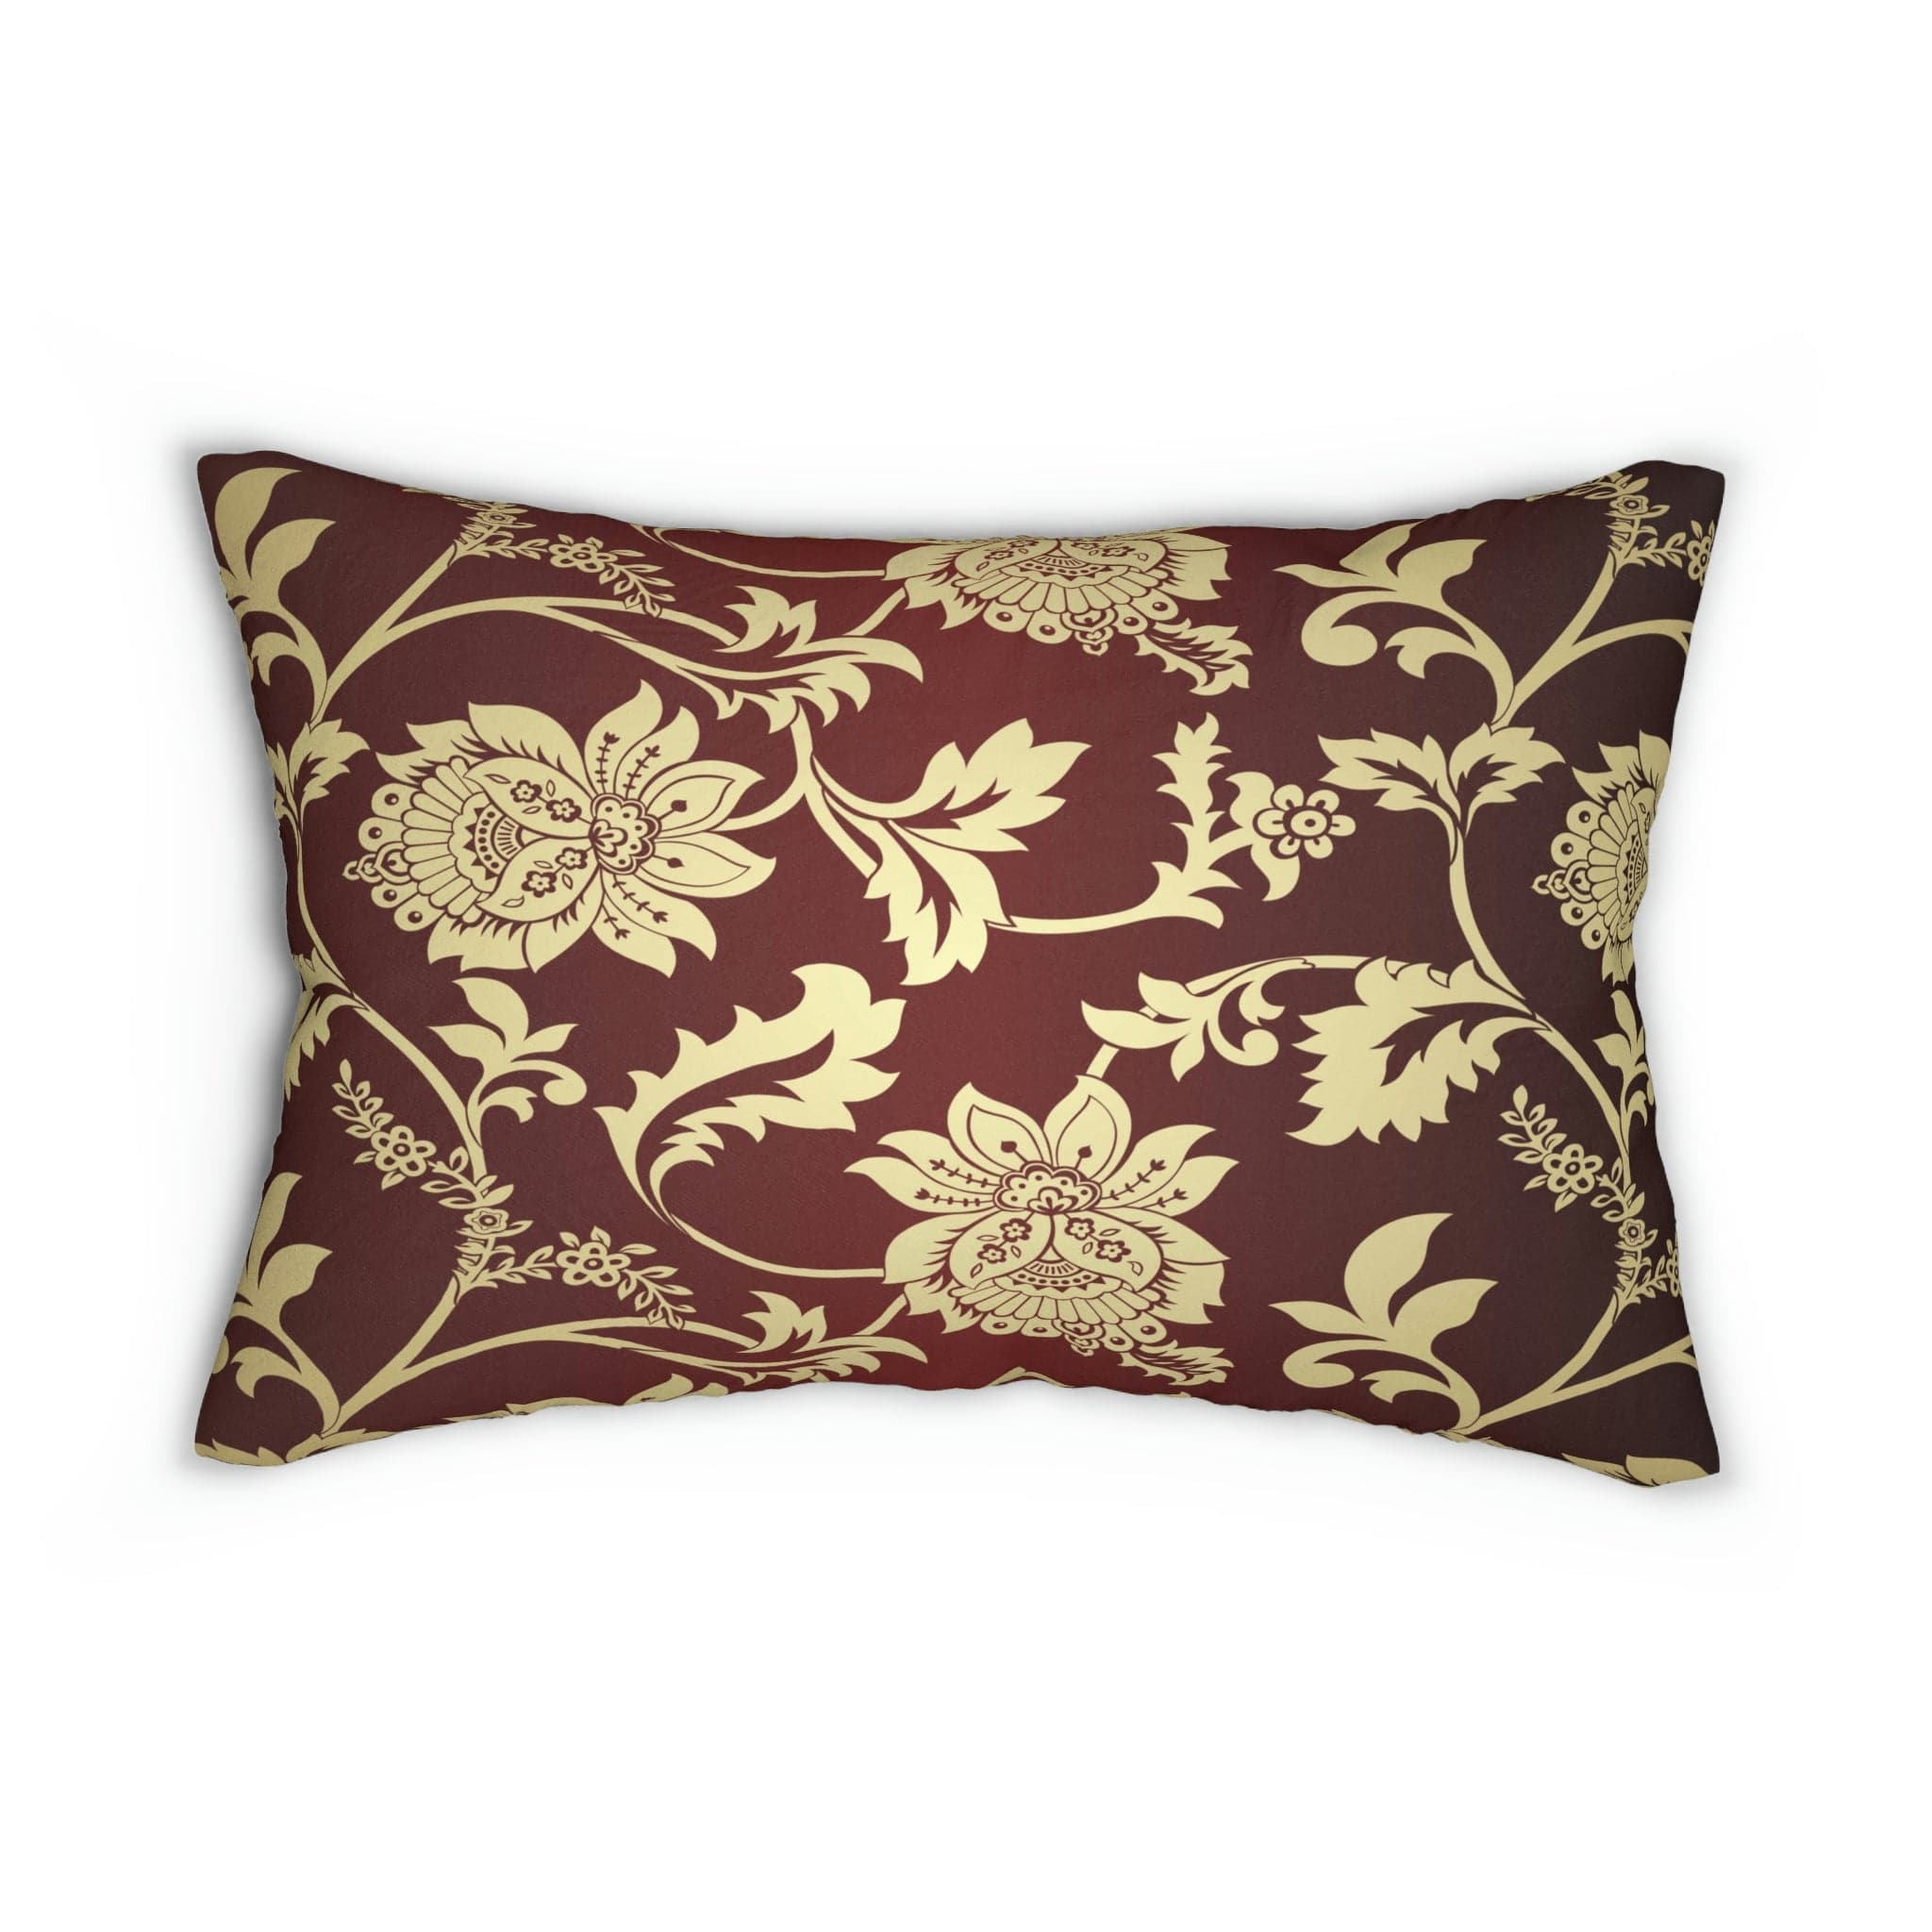 Kate McEnroe New York Lumbar Pillow in Traditional Indian Floral Paisley Lumbar Pillows 20&quot; × 14&quot; 13513630307199604862